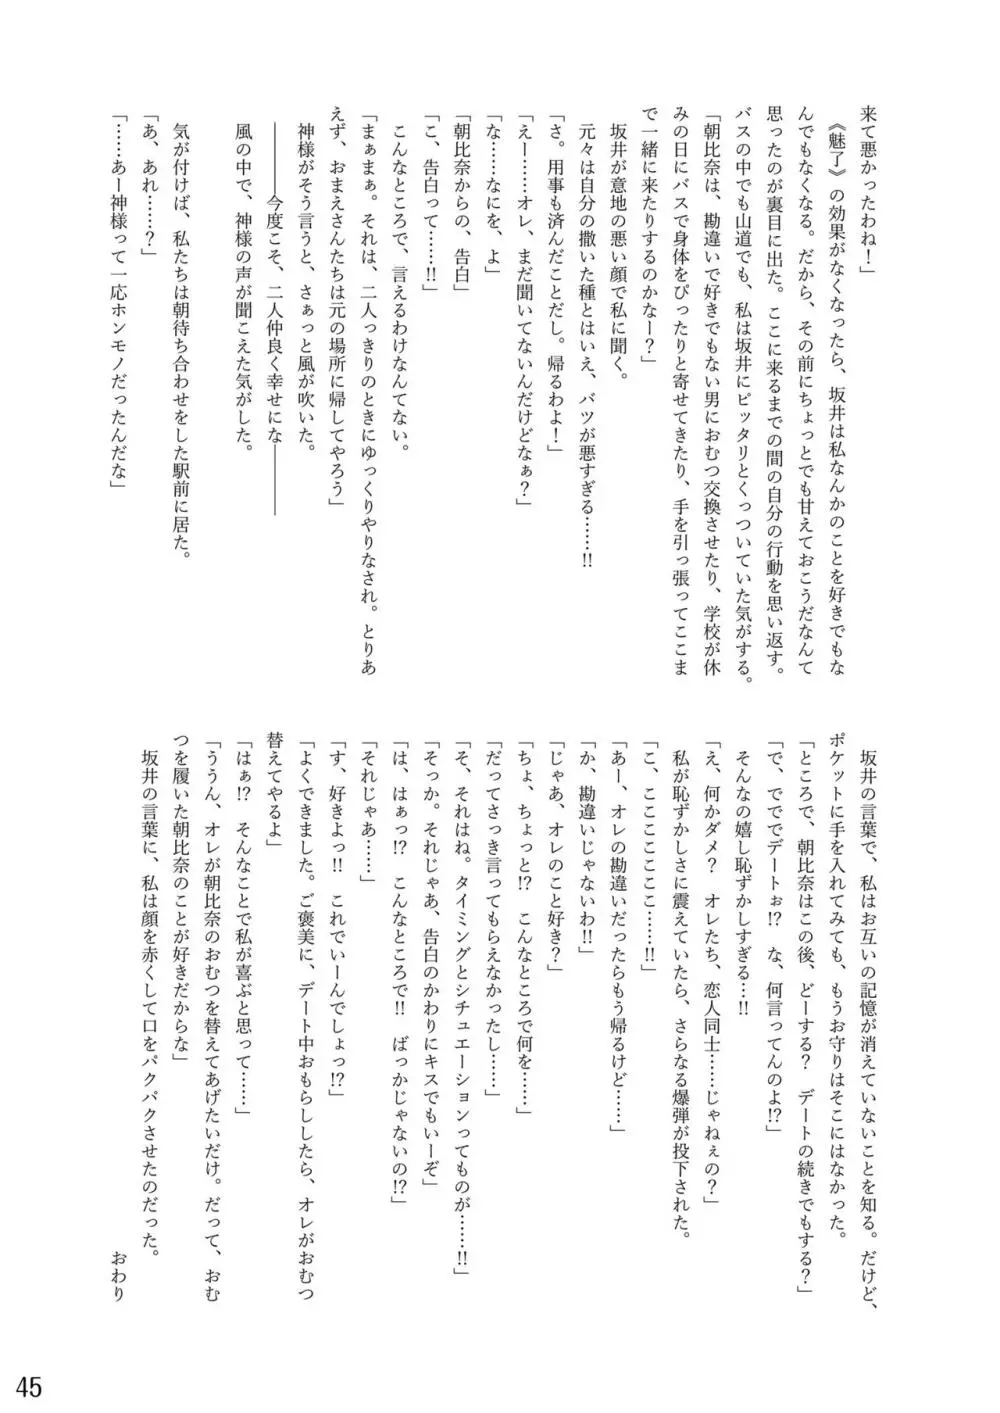 おむ☆フェス8開催記念合同誌「おむつっ娘PARTY!9」 45ページ